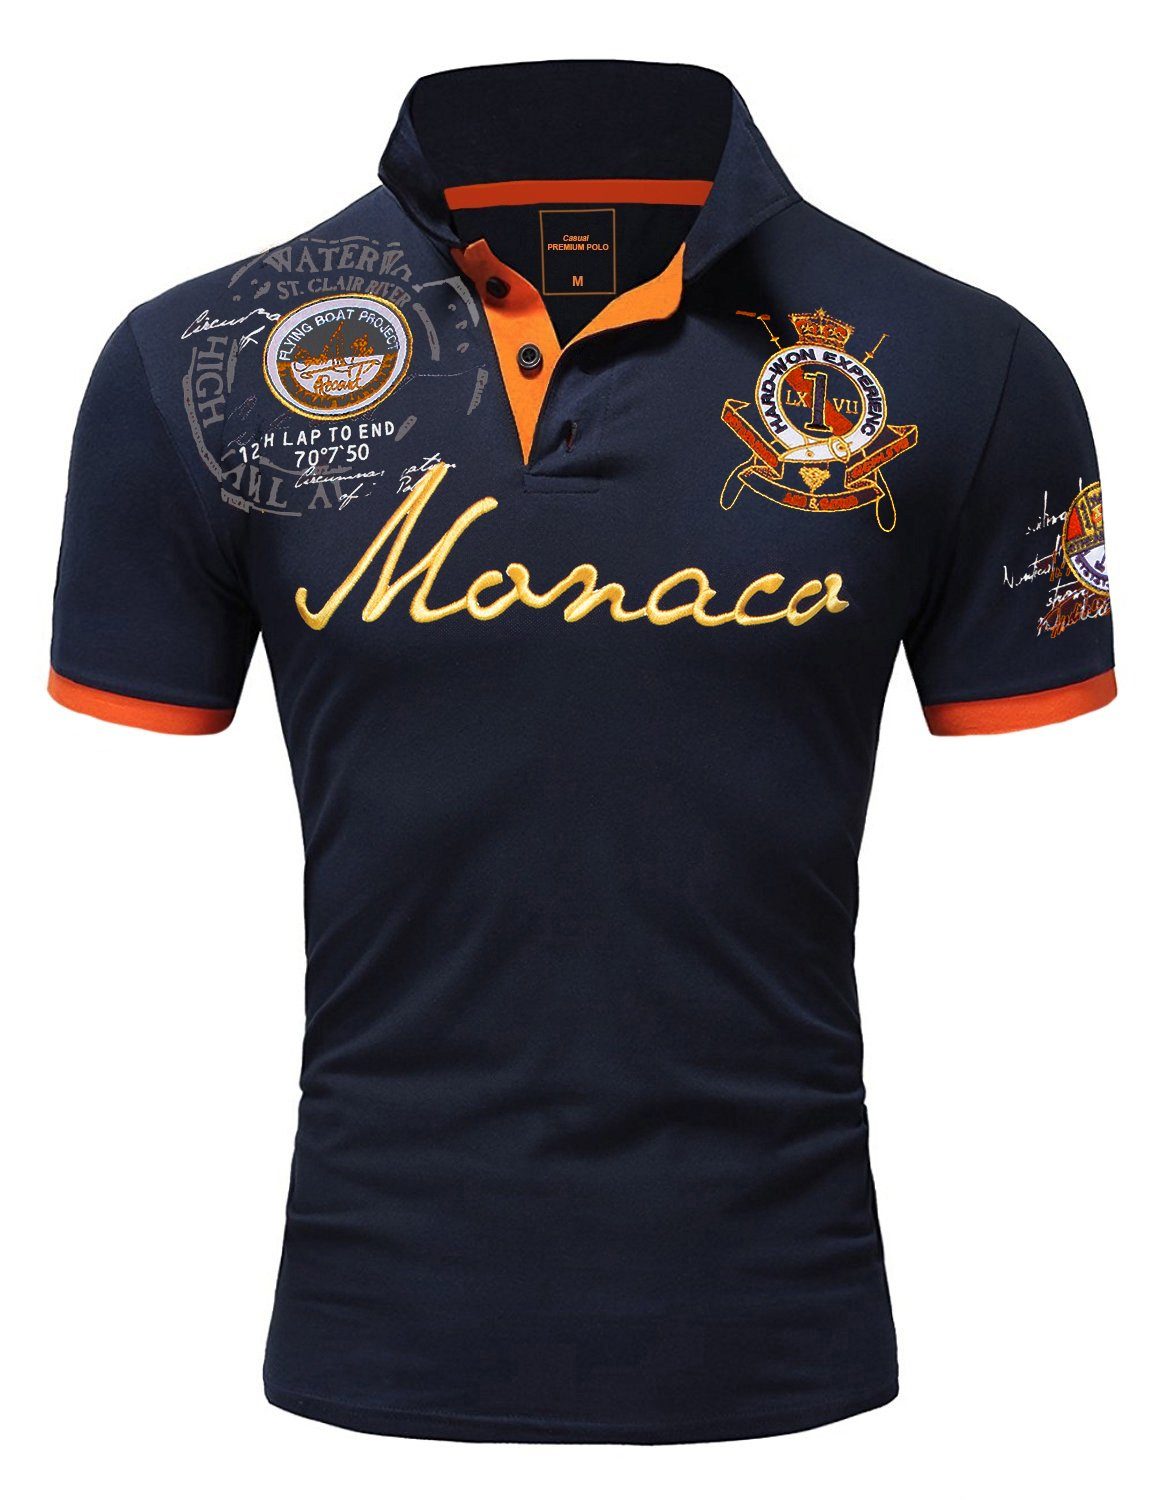 Monaco 2.0 Poloshirt Stickerei Amaci&Sons Stickerei Poloshirt T-Shirt Kontrast Monaco mit Herren Navyblau Basic Polohemd Kurzarm